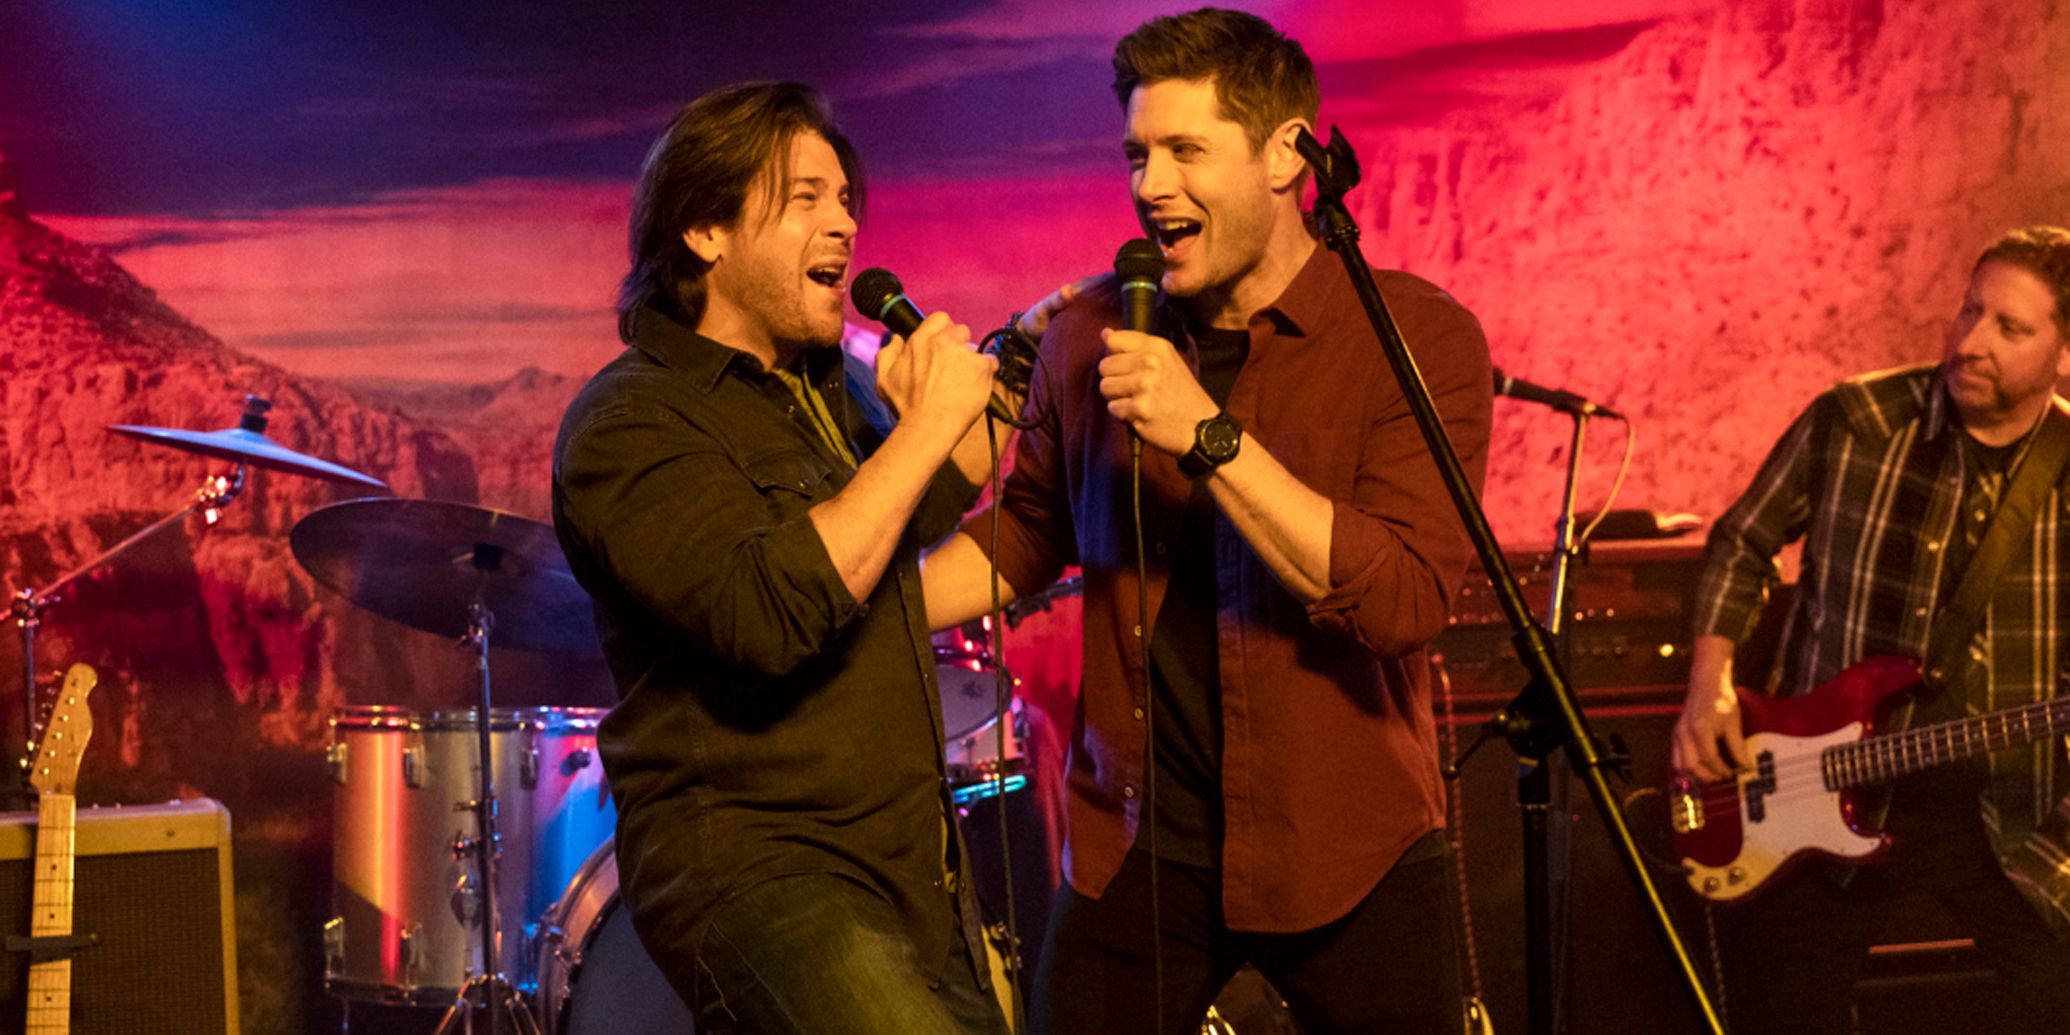 Dean and Lee sing karaoke in Supernatural season 15